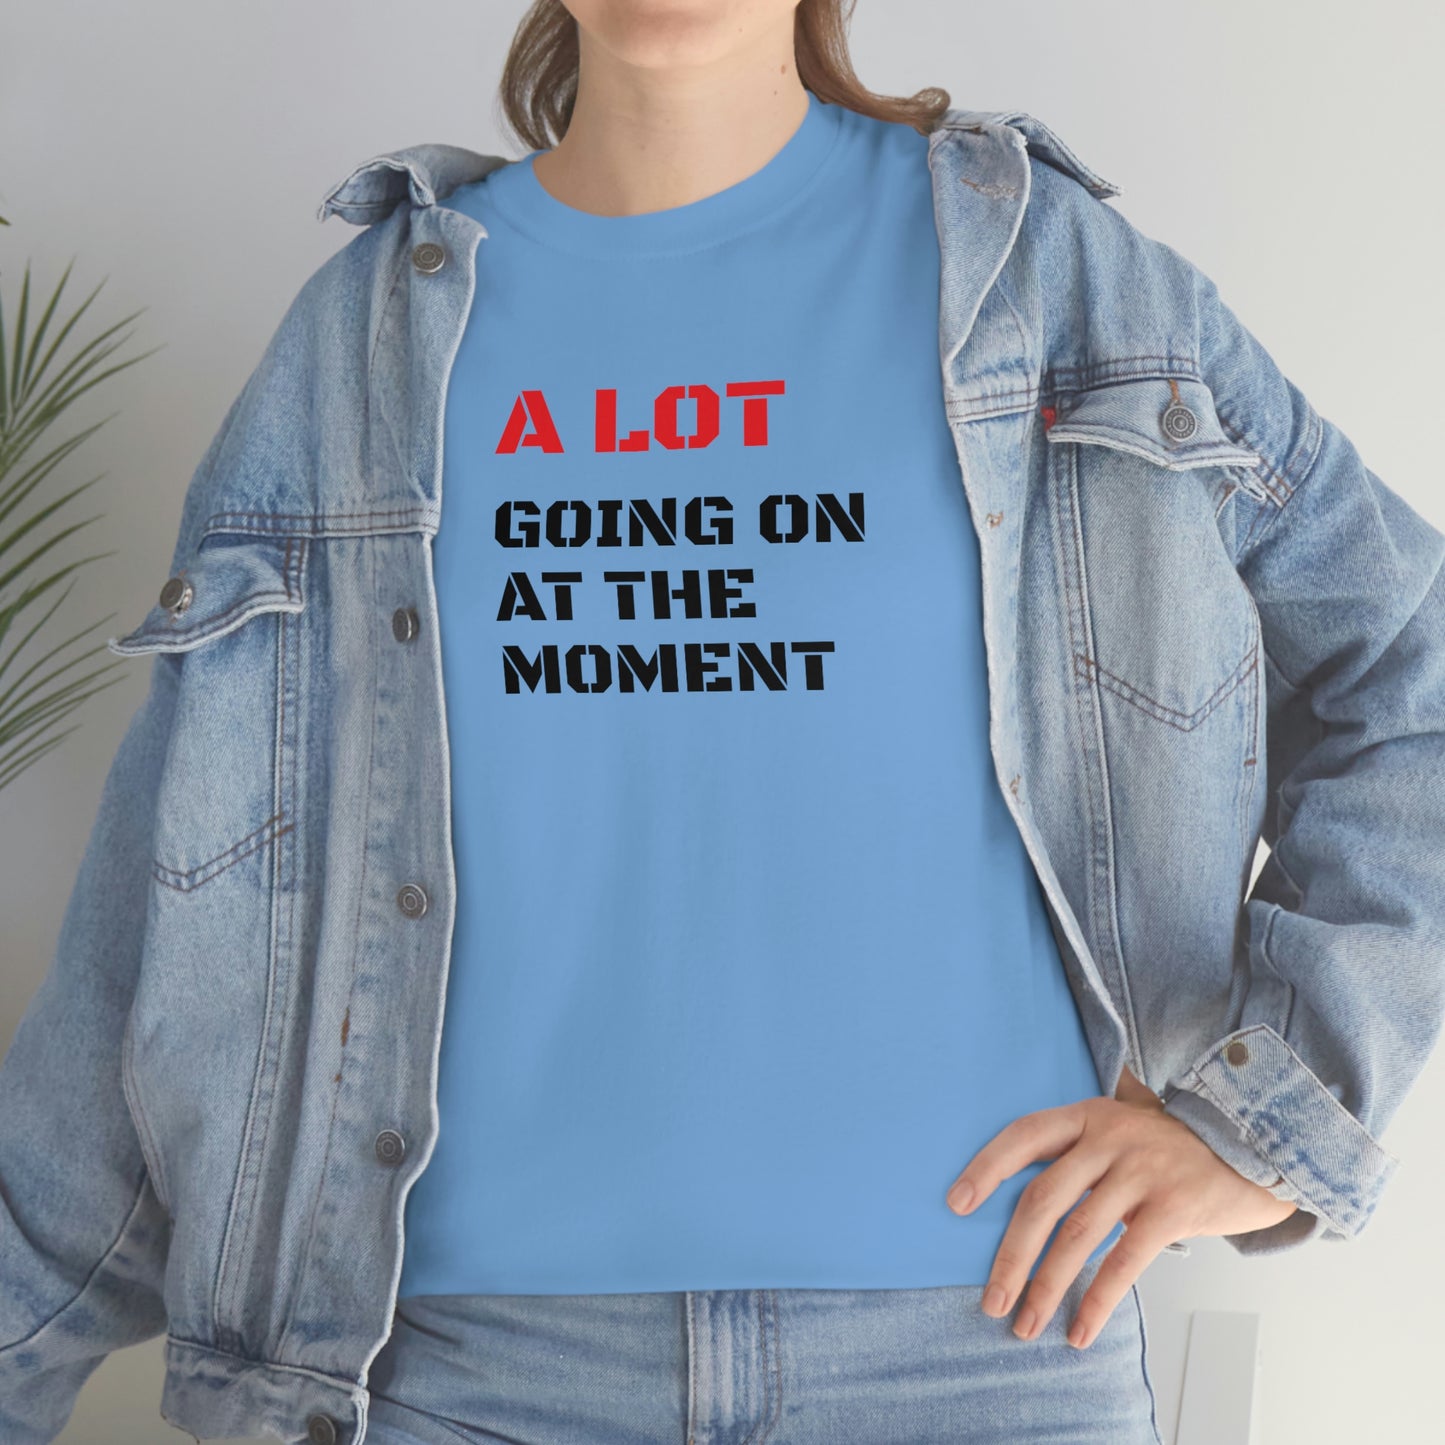 A Lot Going On At The Moment ヘビーコットン Tシャツ ユニセックスサイズ 面白い レディース メンズ